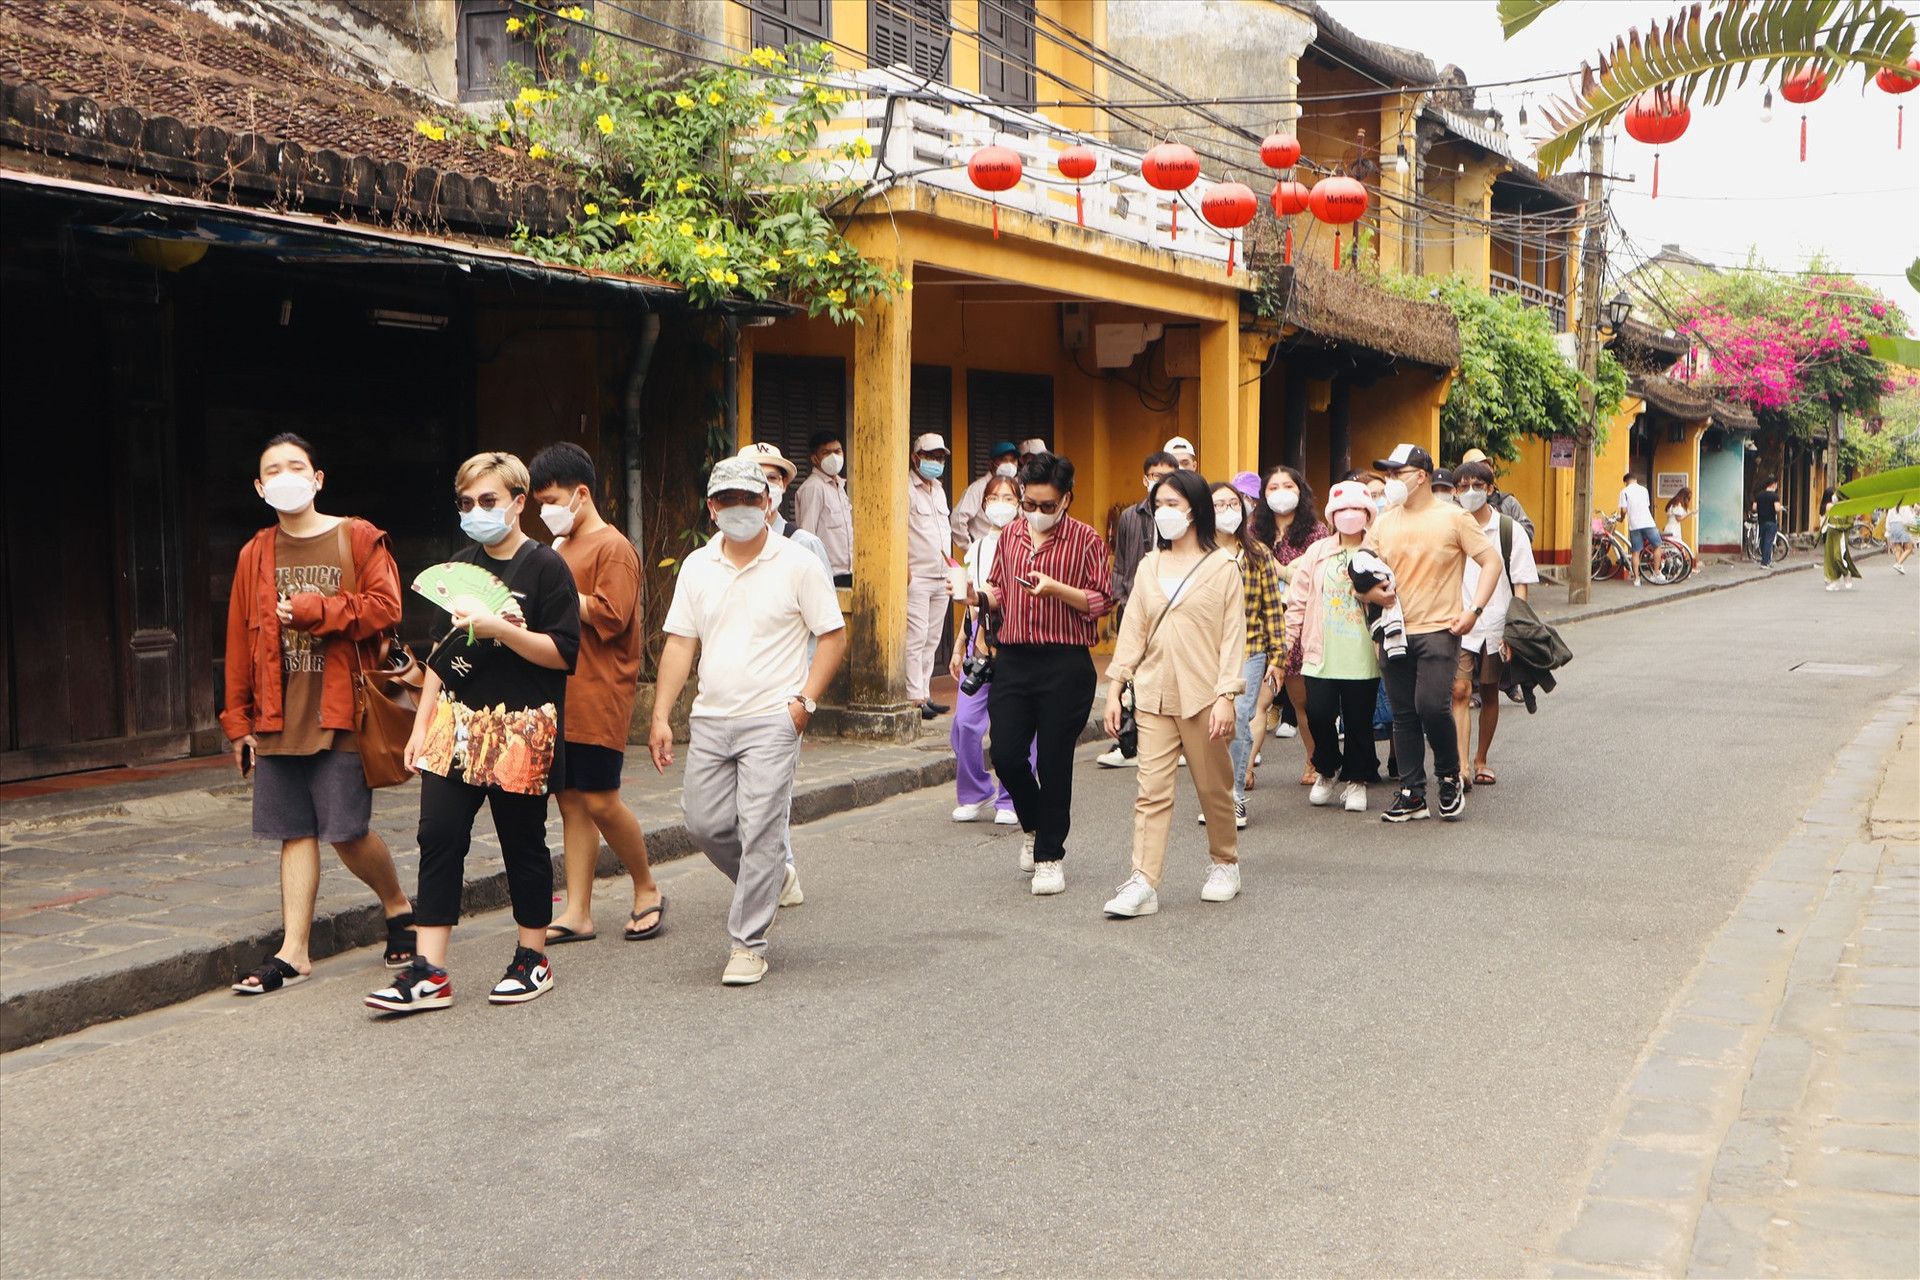 Du lịch Quảng Nam đang liên tục cải thiện vị trí trong top 15 điểm đến hàng đầu của khách nội địa.